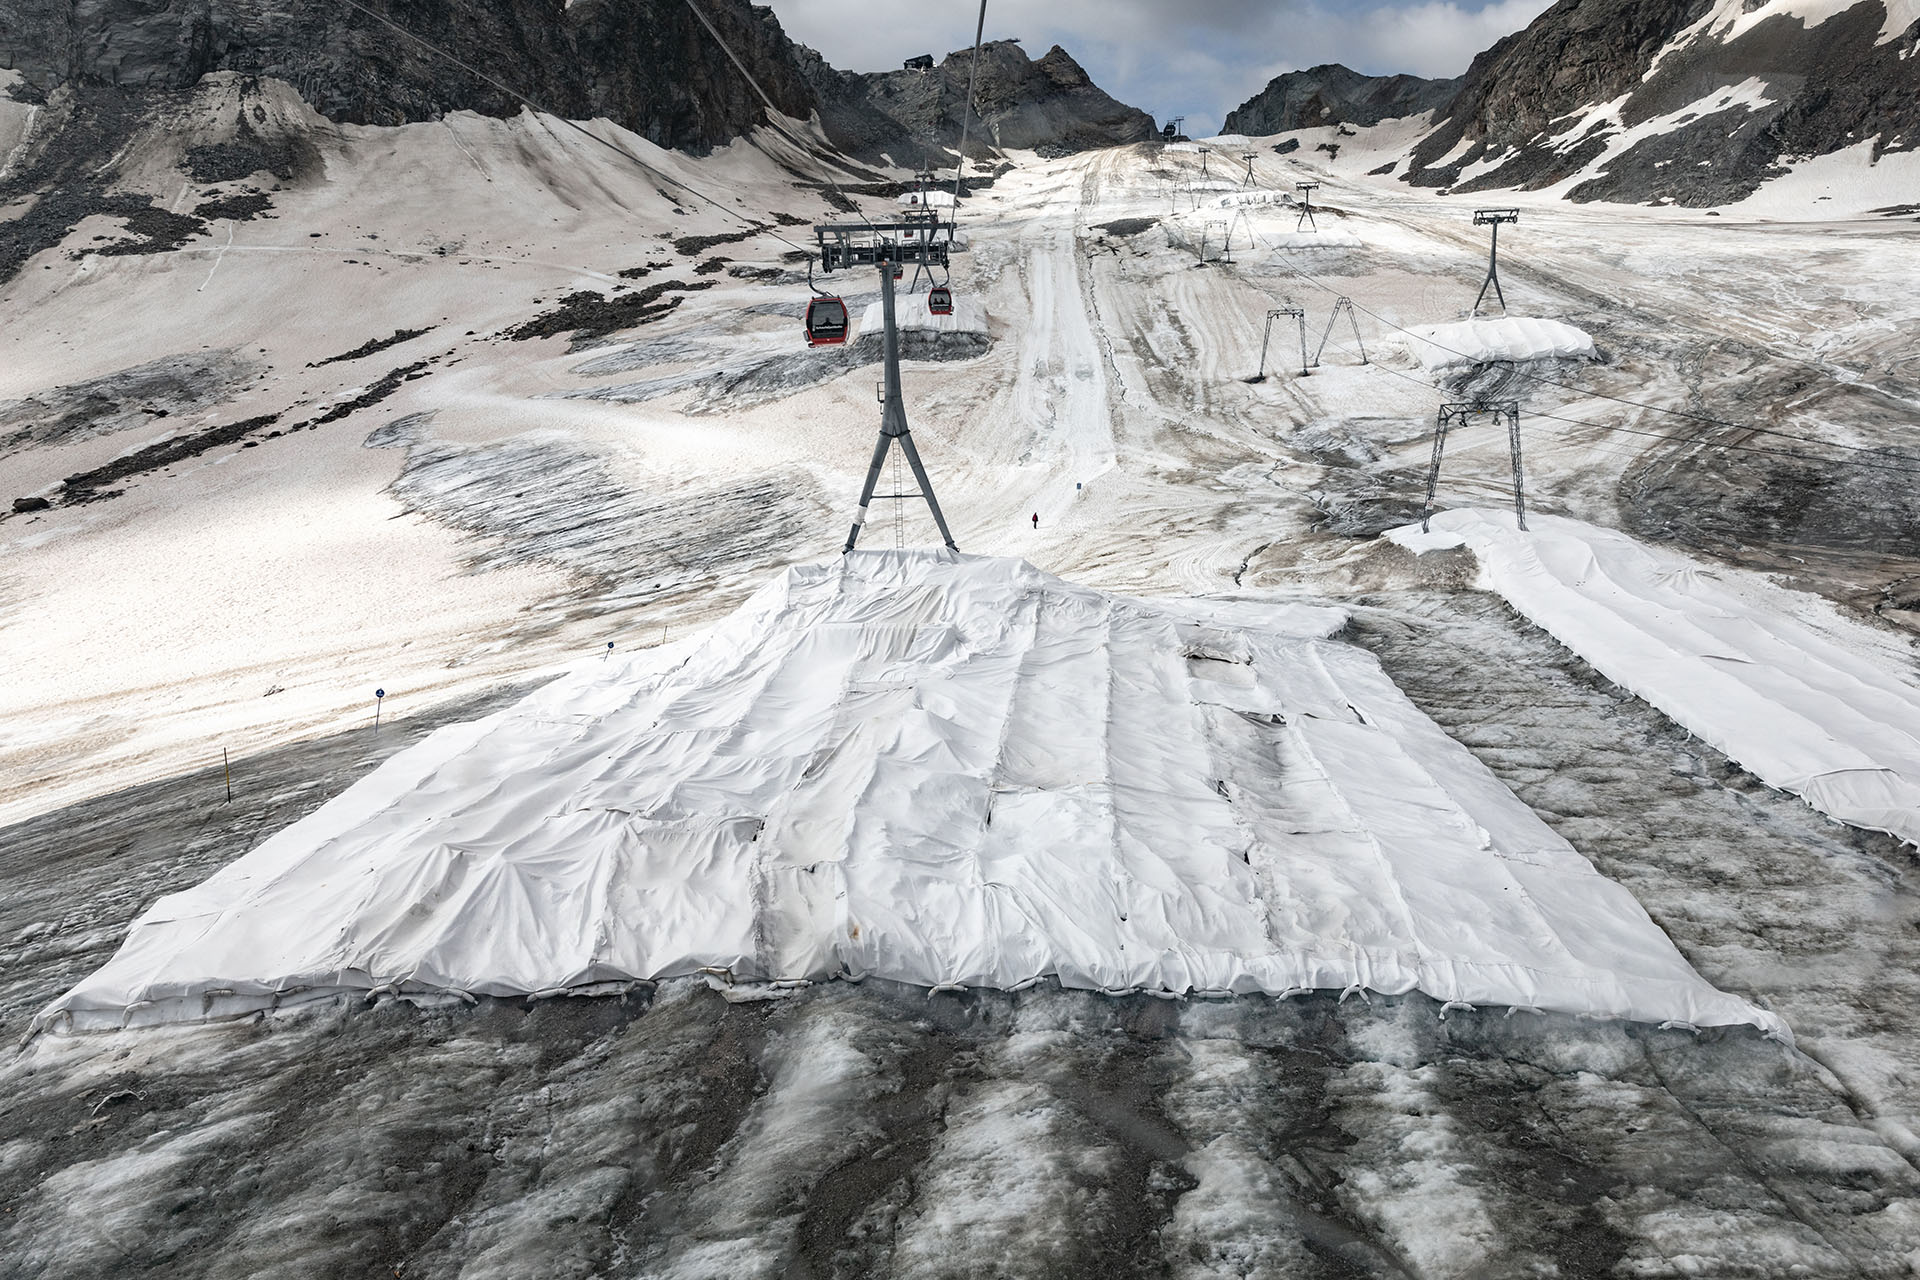 Um das weitere Abschmelzen des Stubaier Gletschers zu verhindern, wird Eis und Schnee im Sommer mit Planen abgedeckt.